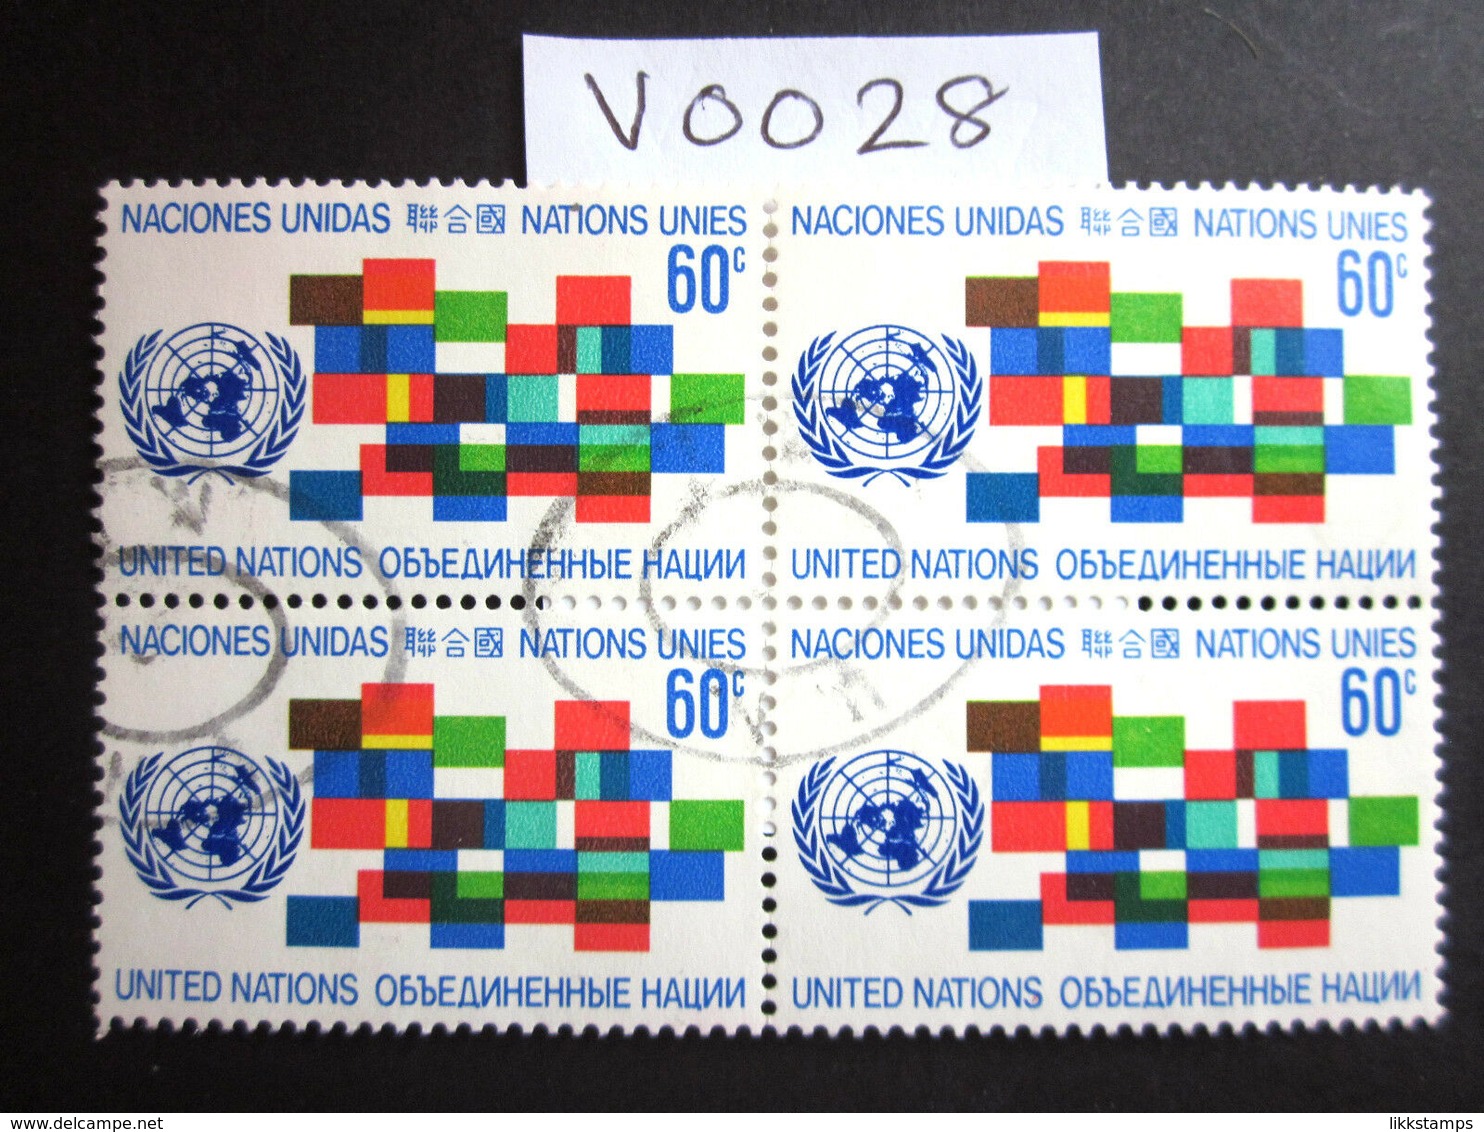 1971 A FINE USED BLOCK OF 4 "SG 223" PICTORIAL UNITED NATIONS USED STAMPS ( V0028 ) #00356 - Verzamelingen & Reeksen